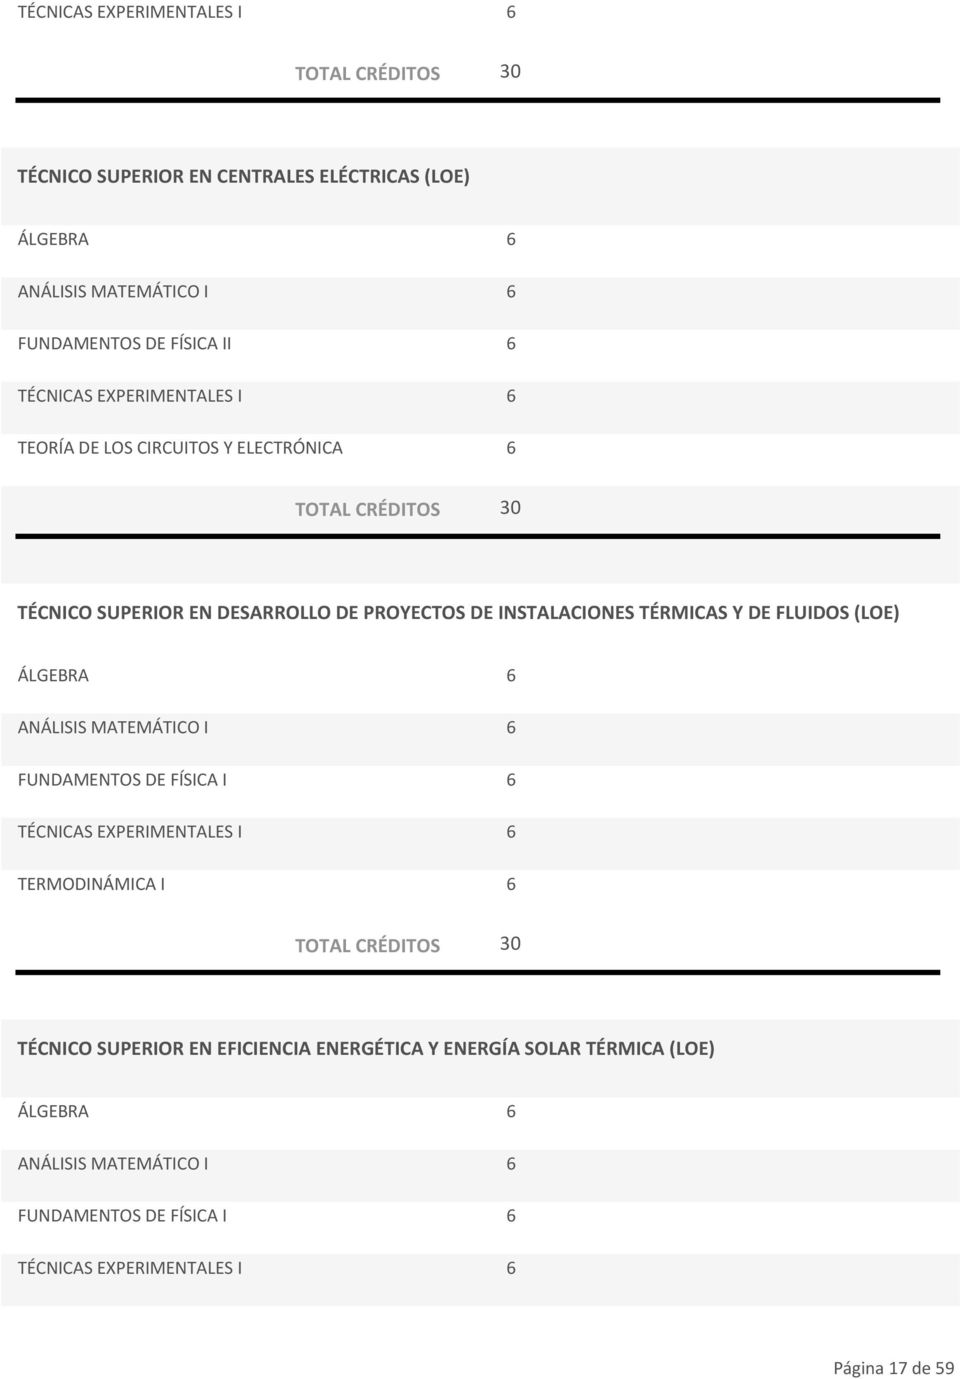 FLUIDOS (LOE) ÁLGEBRA 6 ANÁLISIS MATEMÁTICO I 6 FUNDAMENTOS DE FÍSICA I 6 TÉCNICAS EXPERIMENTALES I 6 TERMODINÁMICA I 6 TÉCNICO SUPERIOR EN